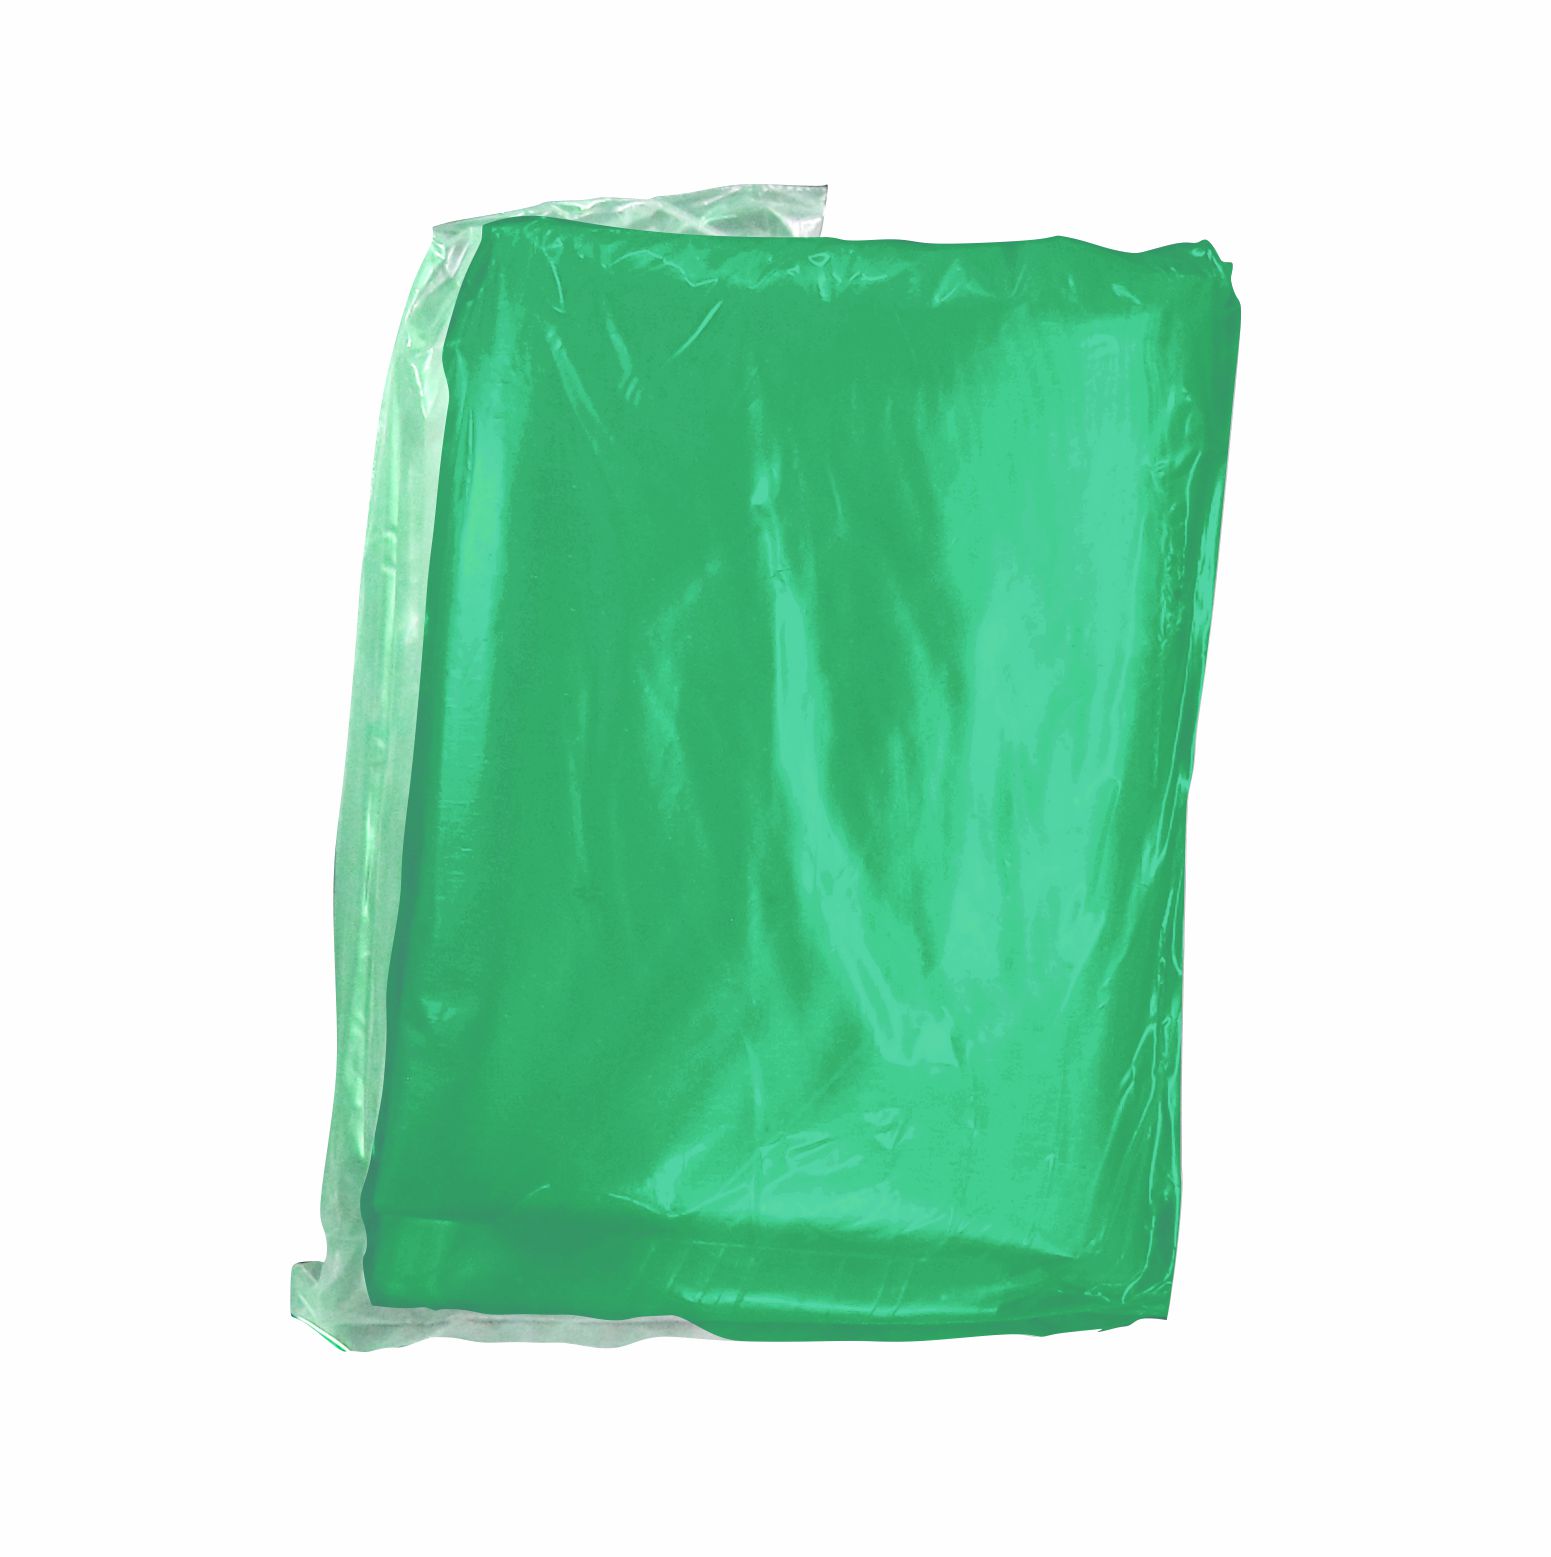 Paquete de bolsa 1.10 x 1.20 color verde con 25 kilos